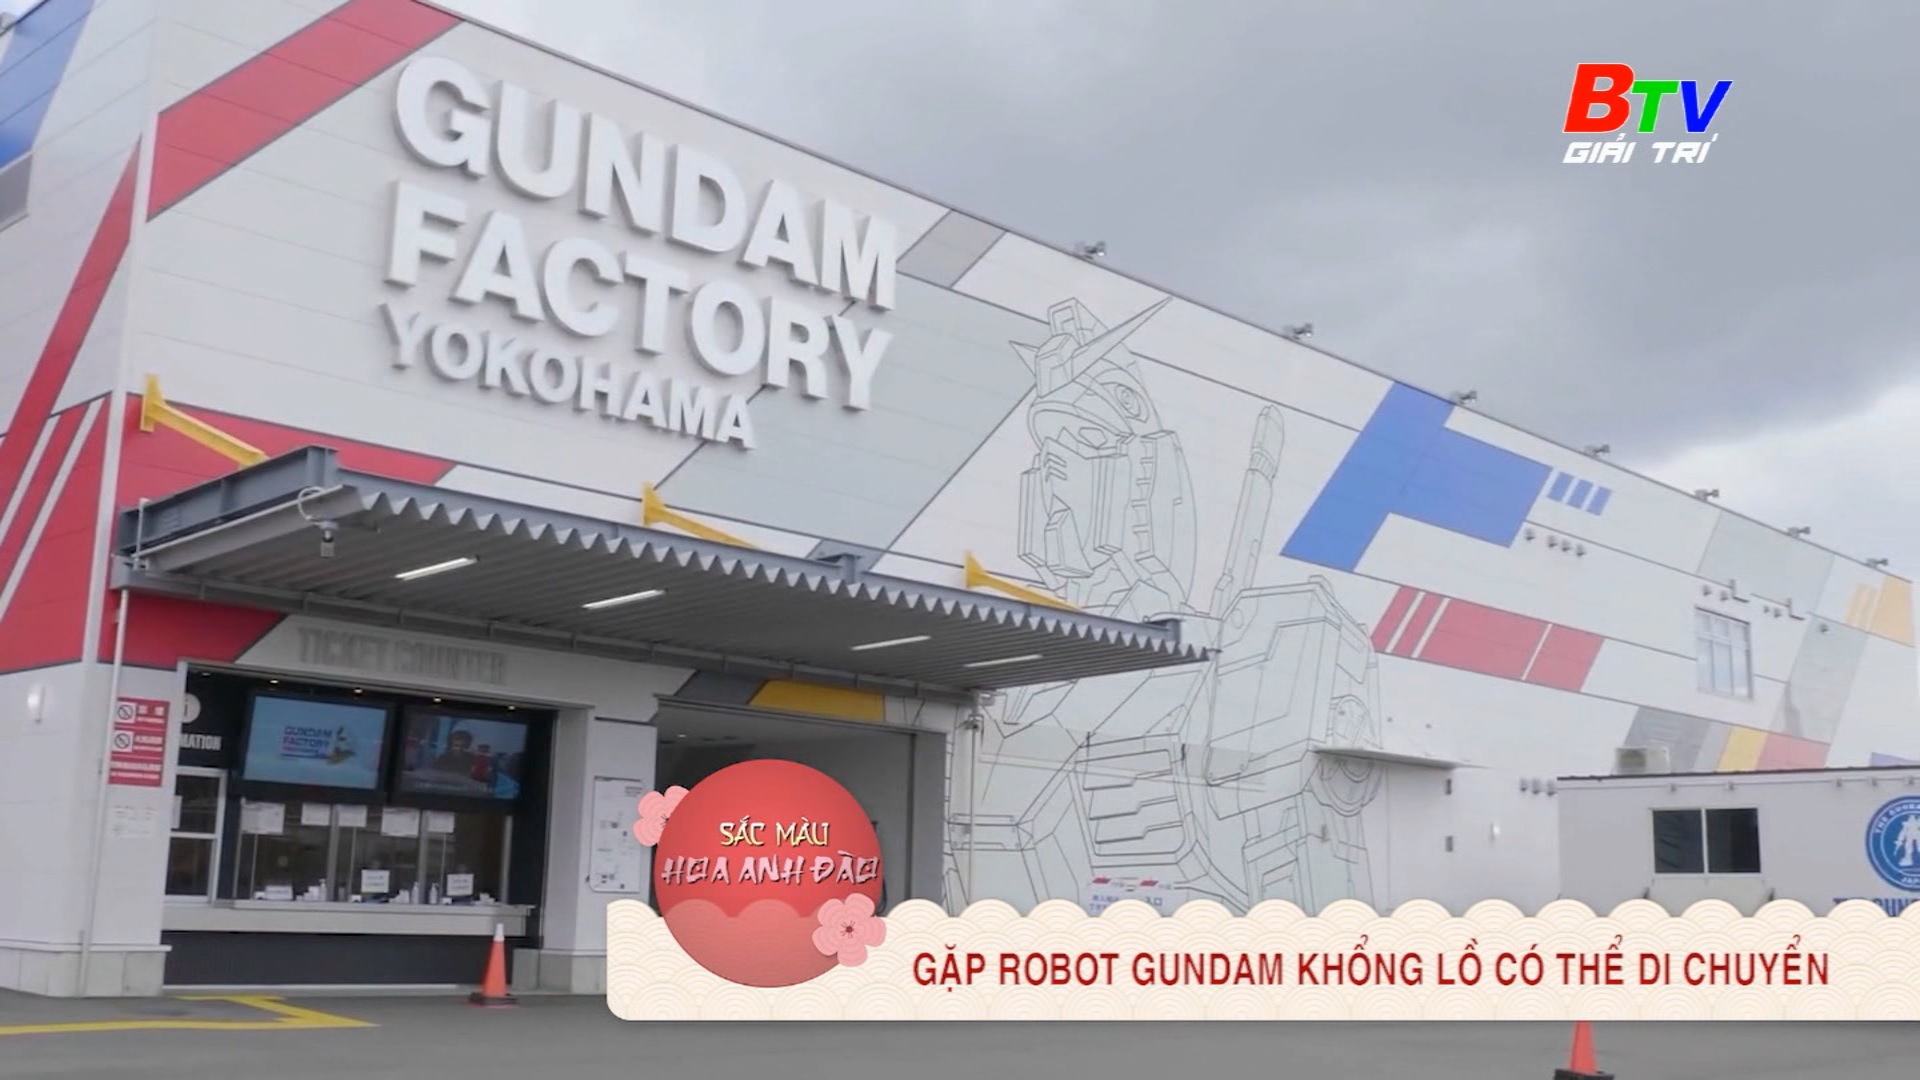 Gặp Robot Gundam khổng lồ có thể di chuyển